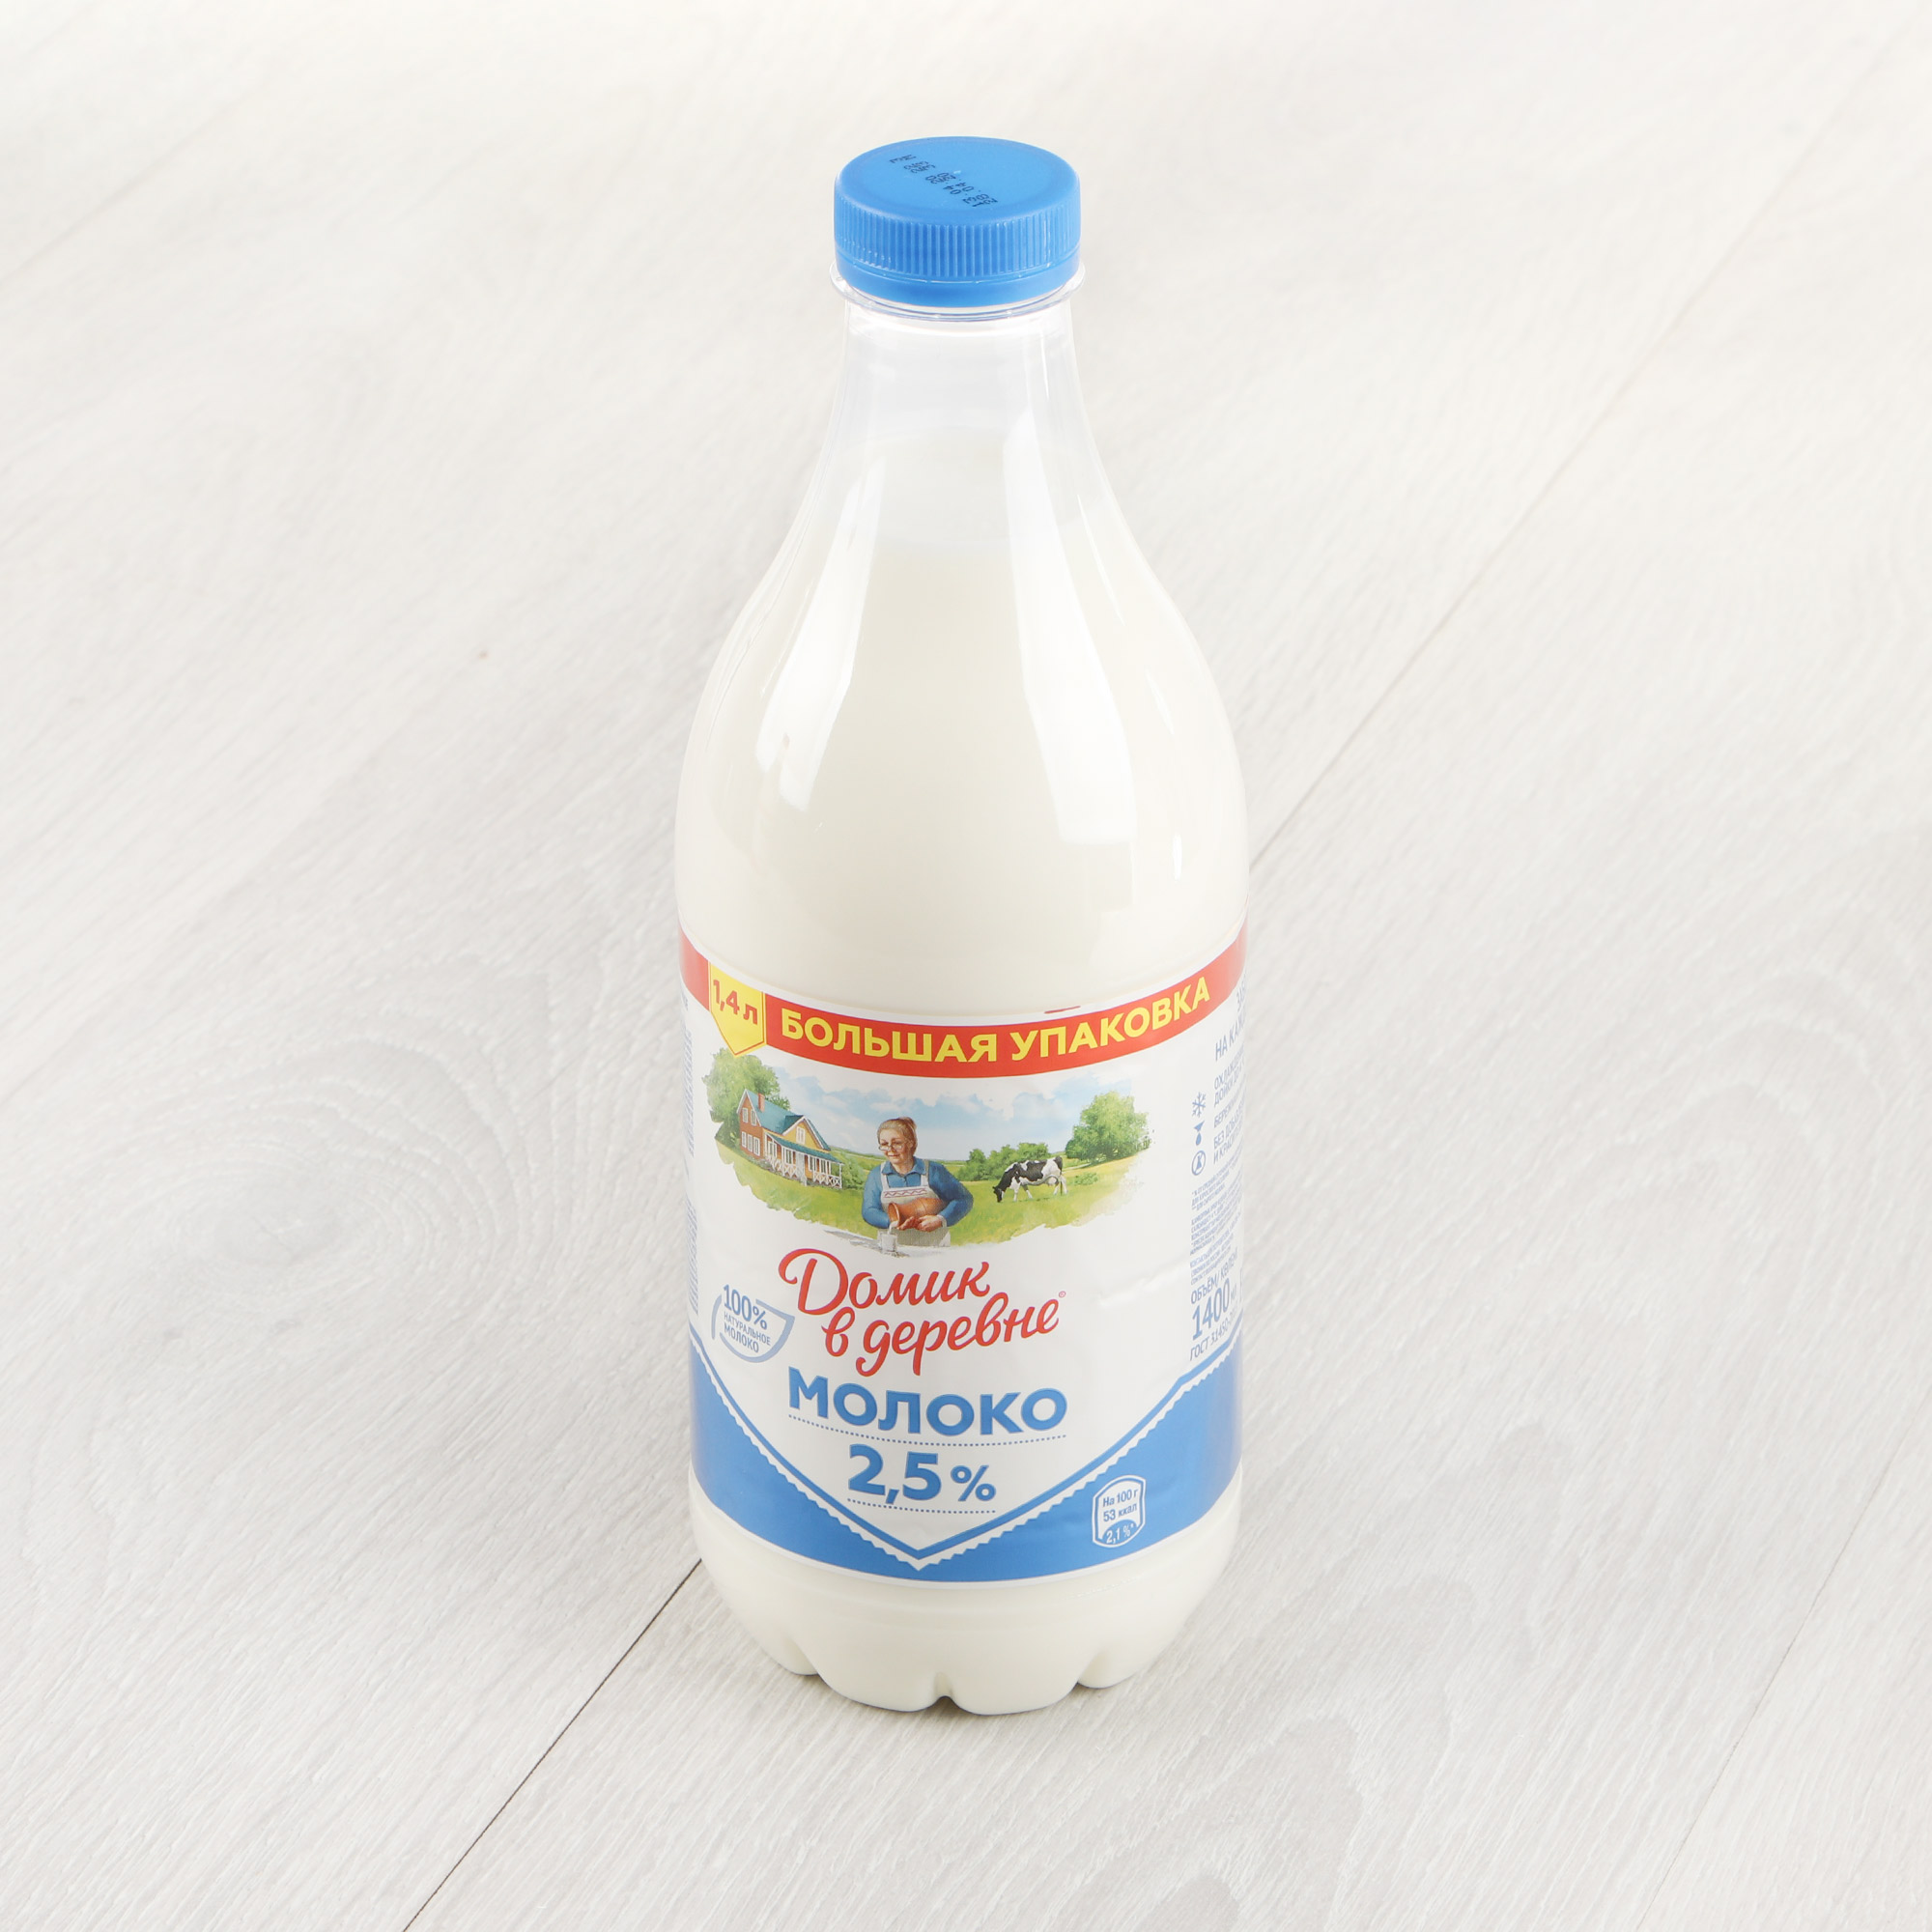 Молоко Домик в деревне пастеризованное 2,5% 1,4 л